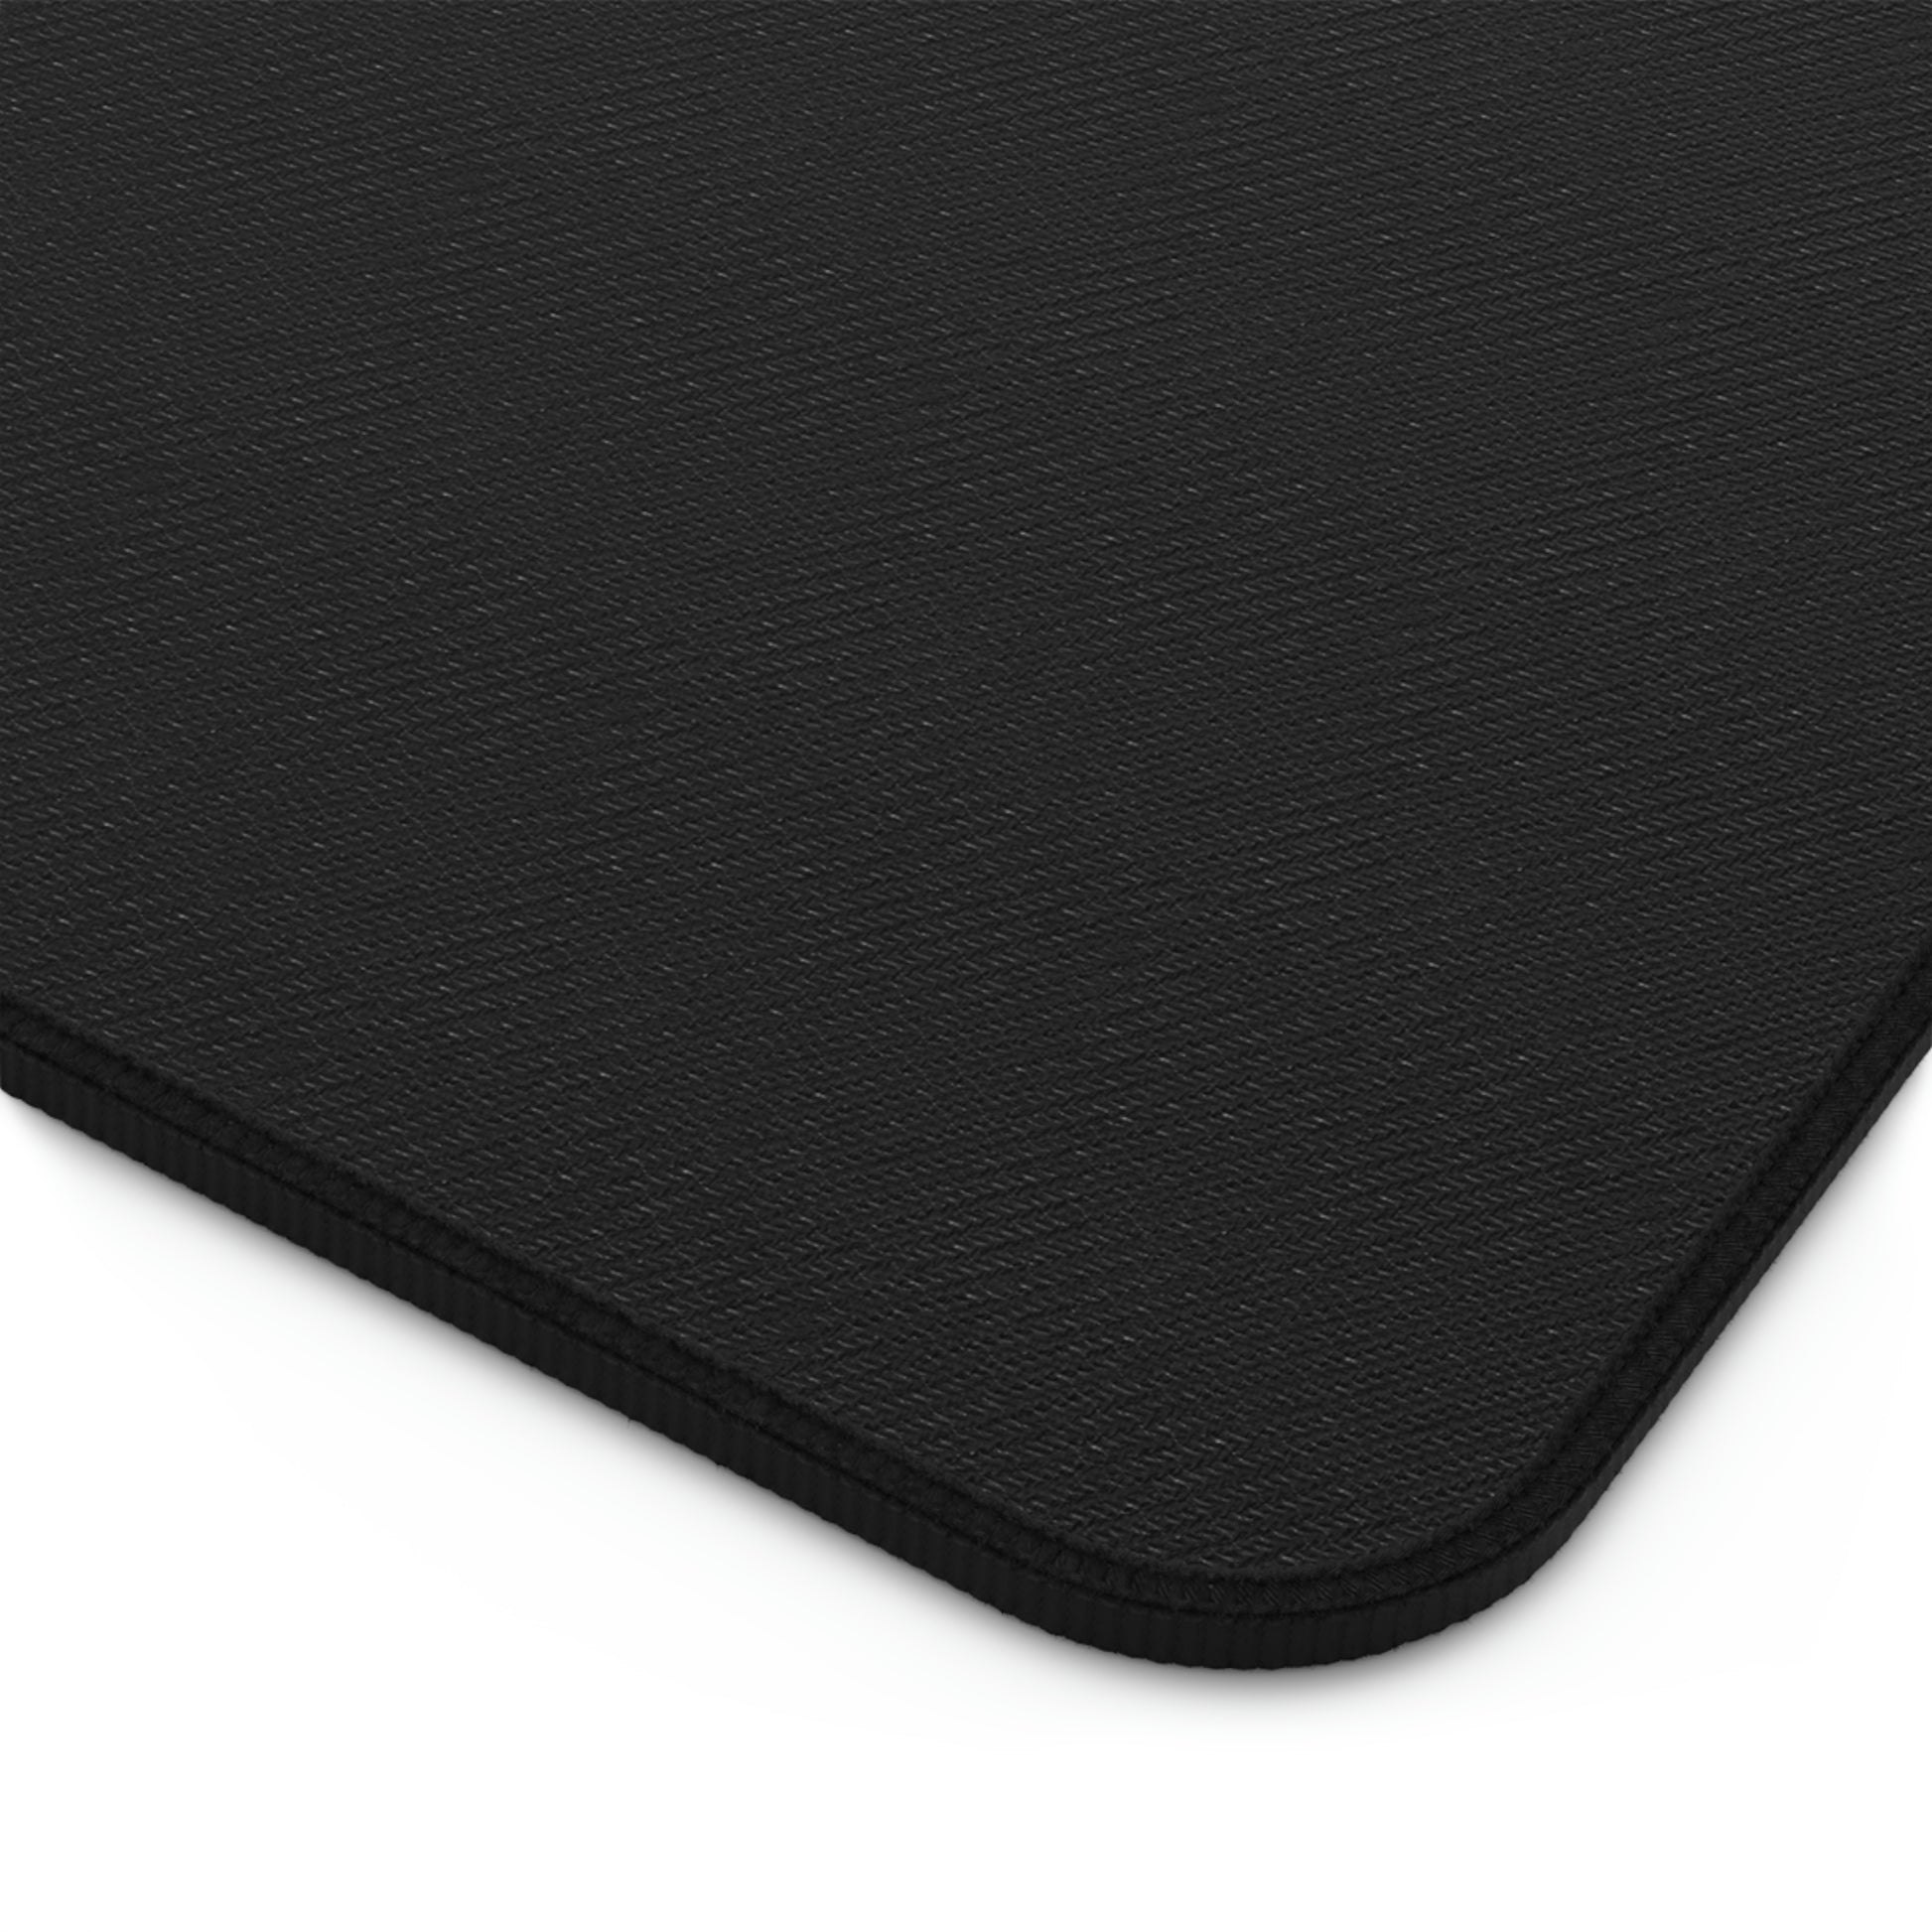 The black rubber bottom of an asteroids desk mat.